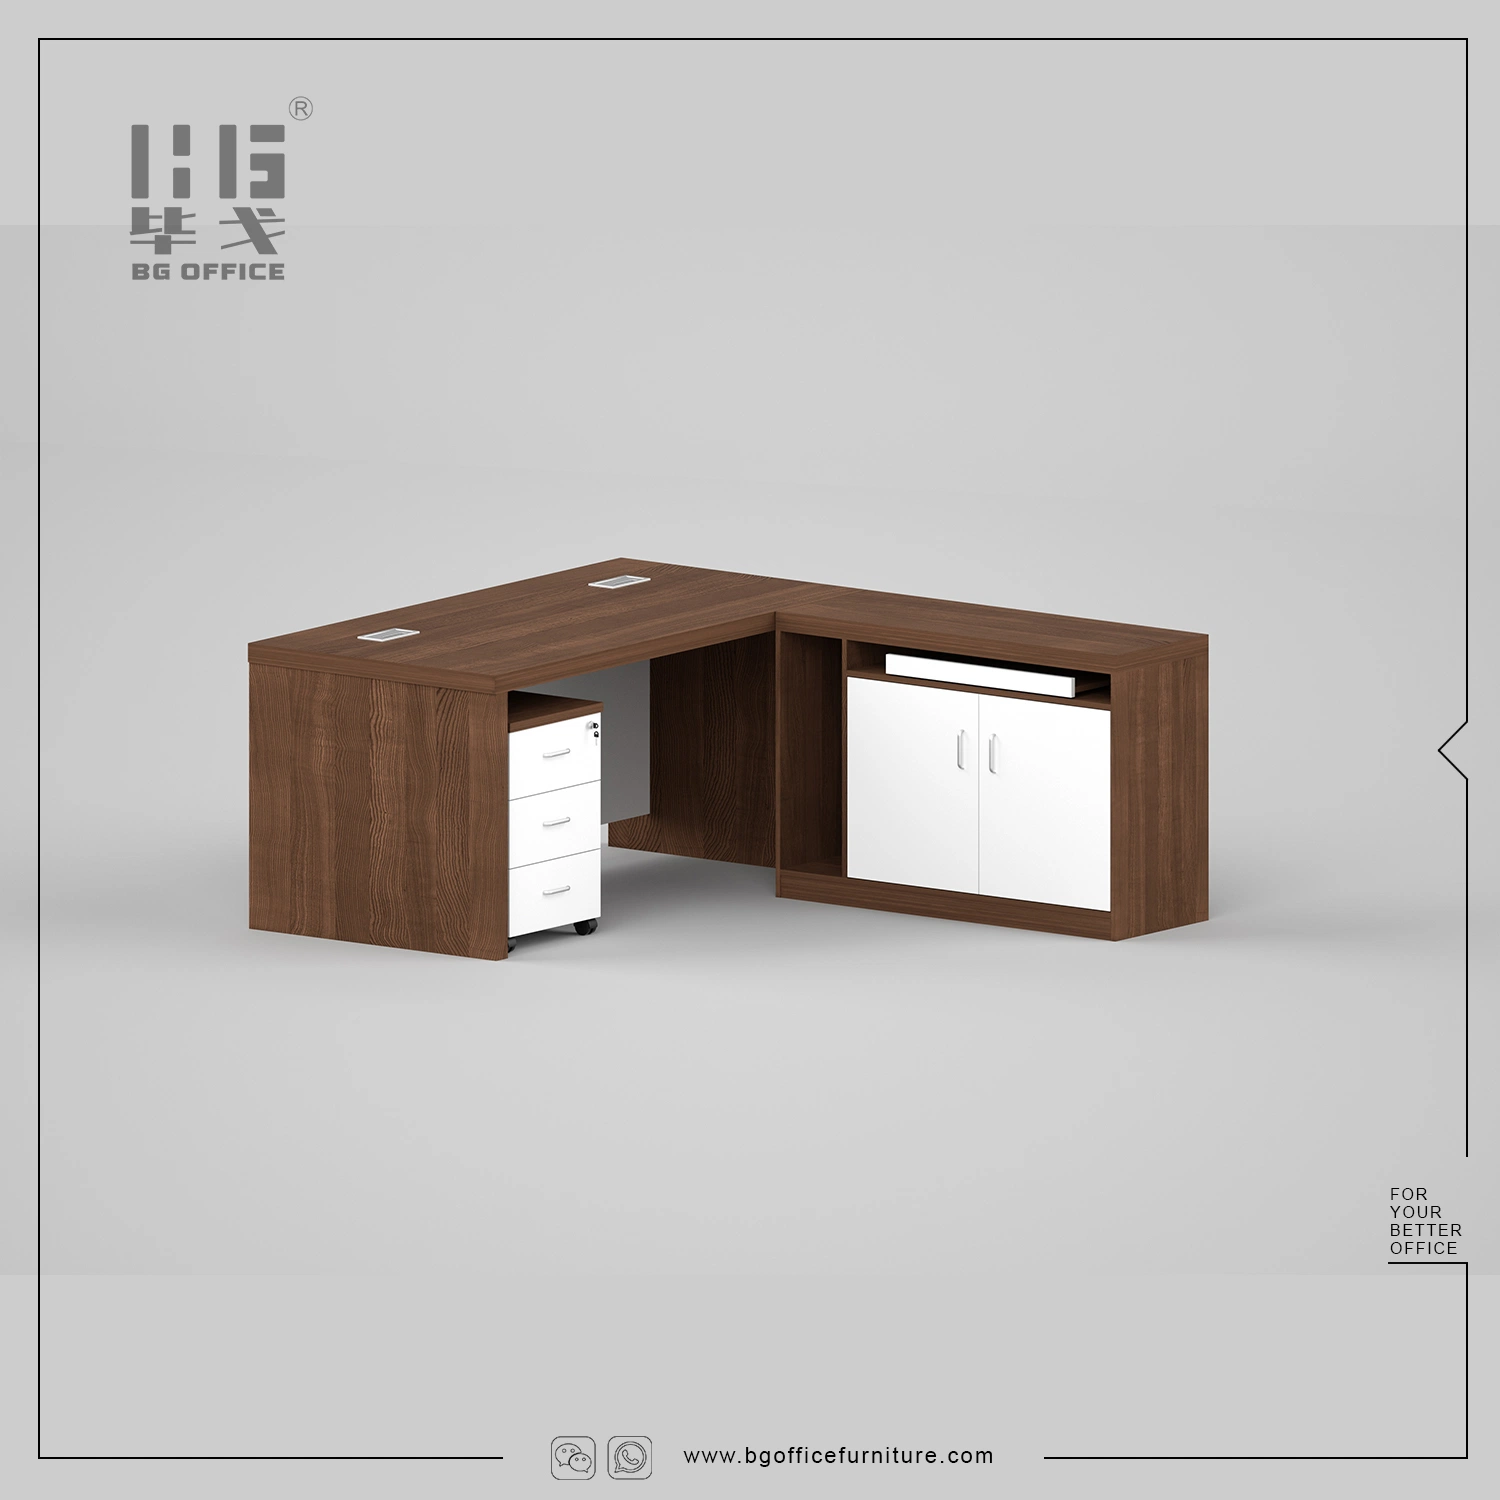 Mesa de móveis clássica do Wooden Manager Melamine Office Table Design com Extensão/estante